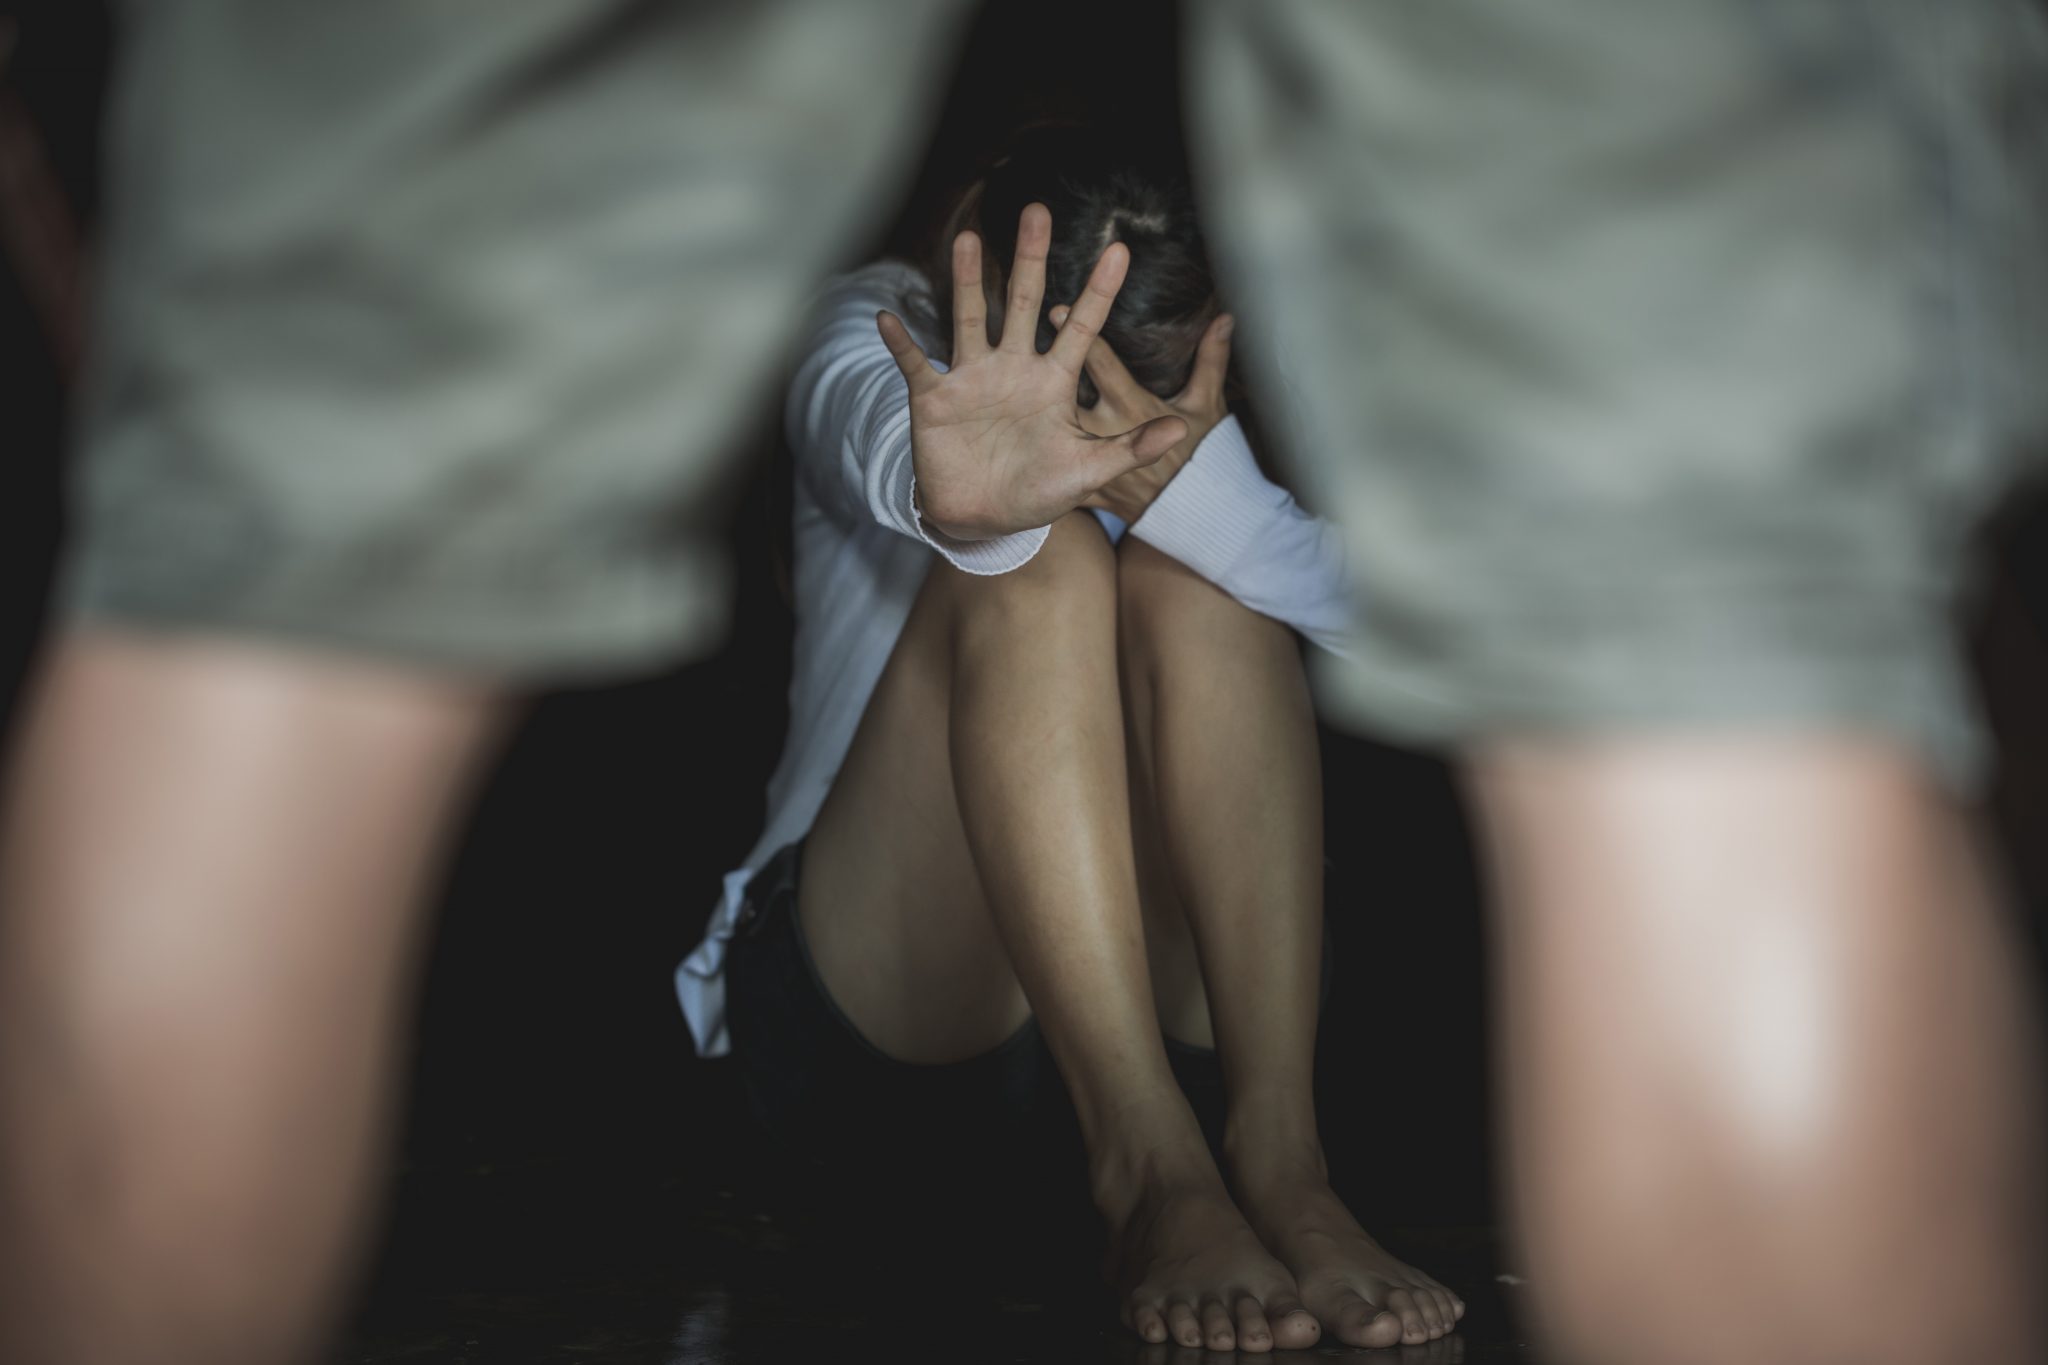 23-årig mand sigtet for voldtægt af 10-årig pige